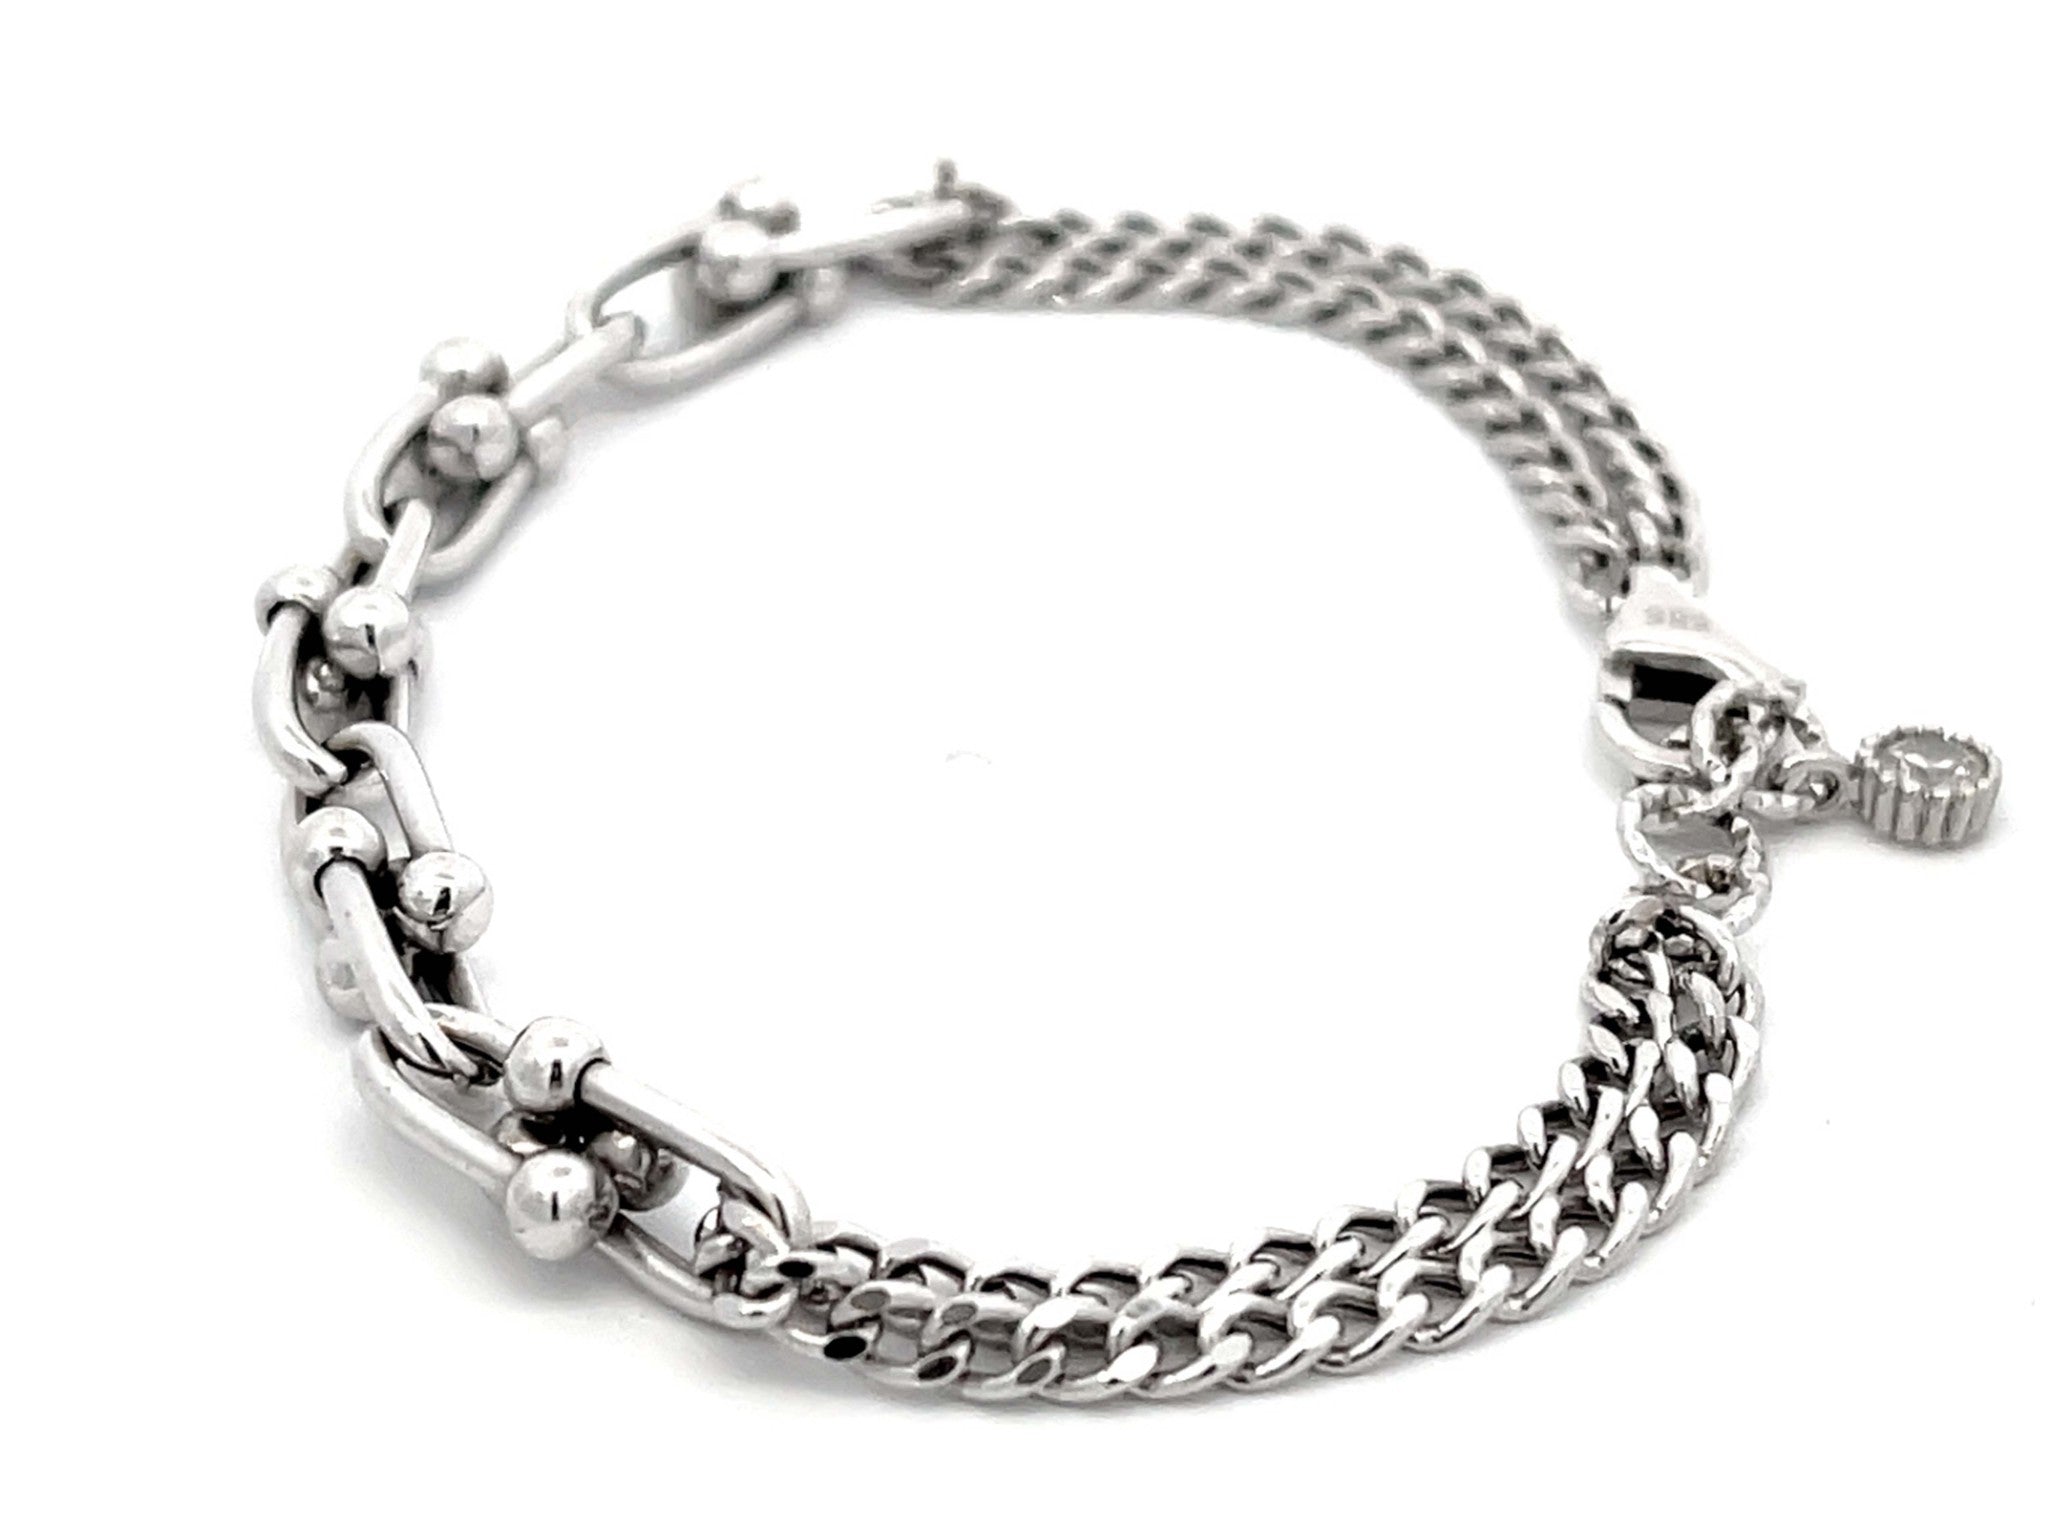 Genola Chain Link Bracelet in 14k White Gold